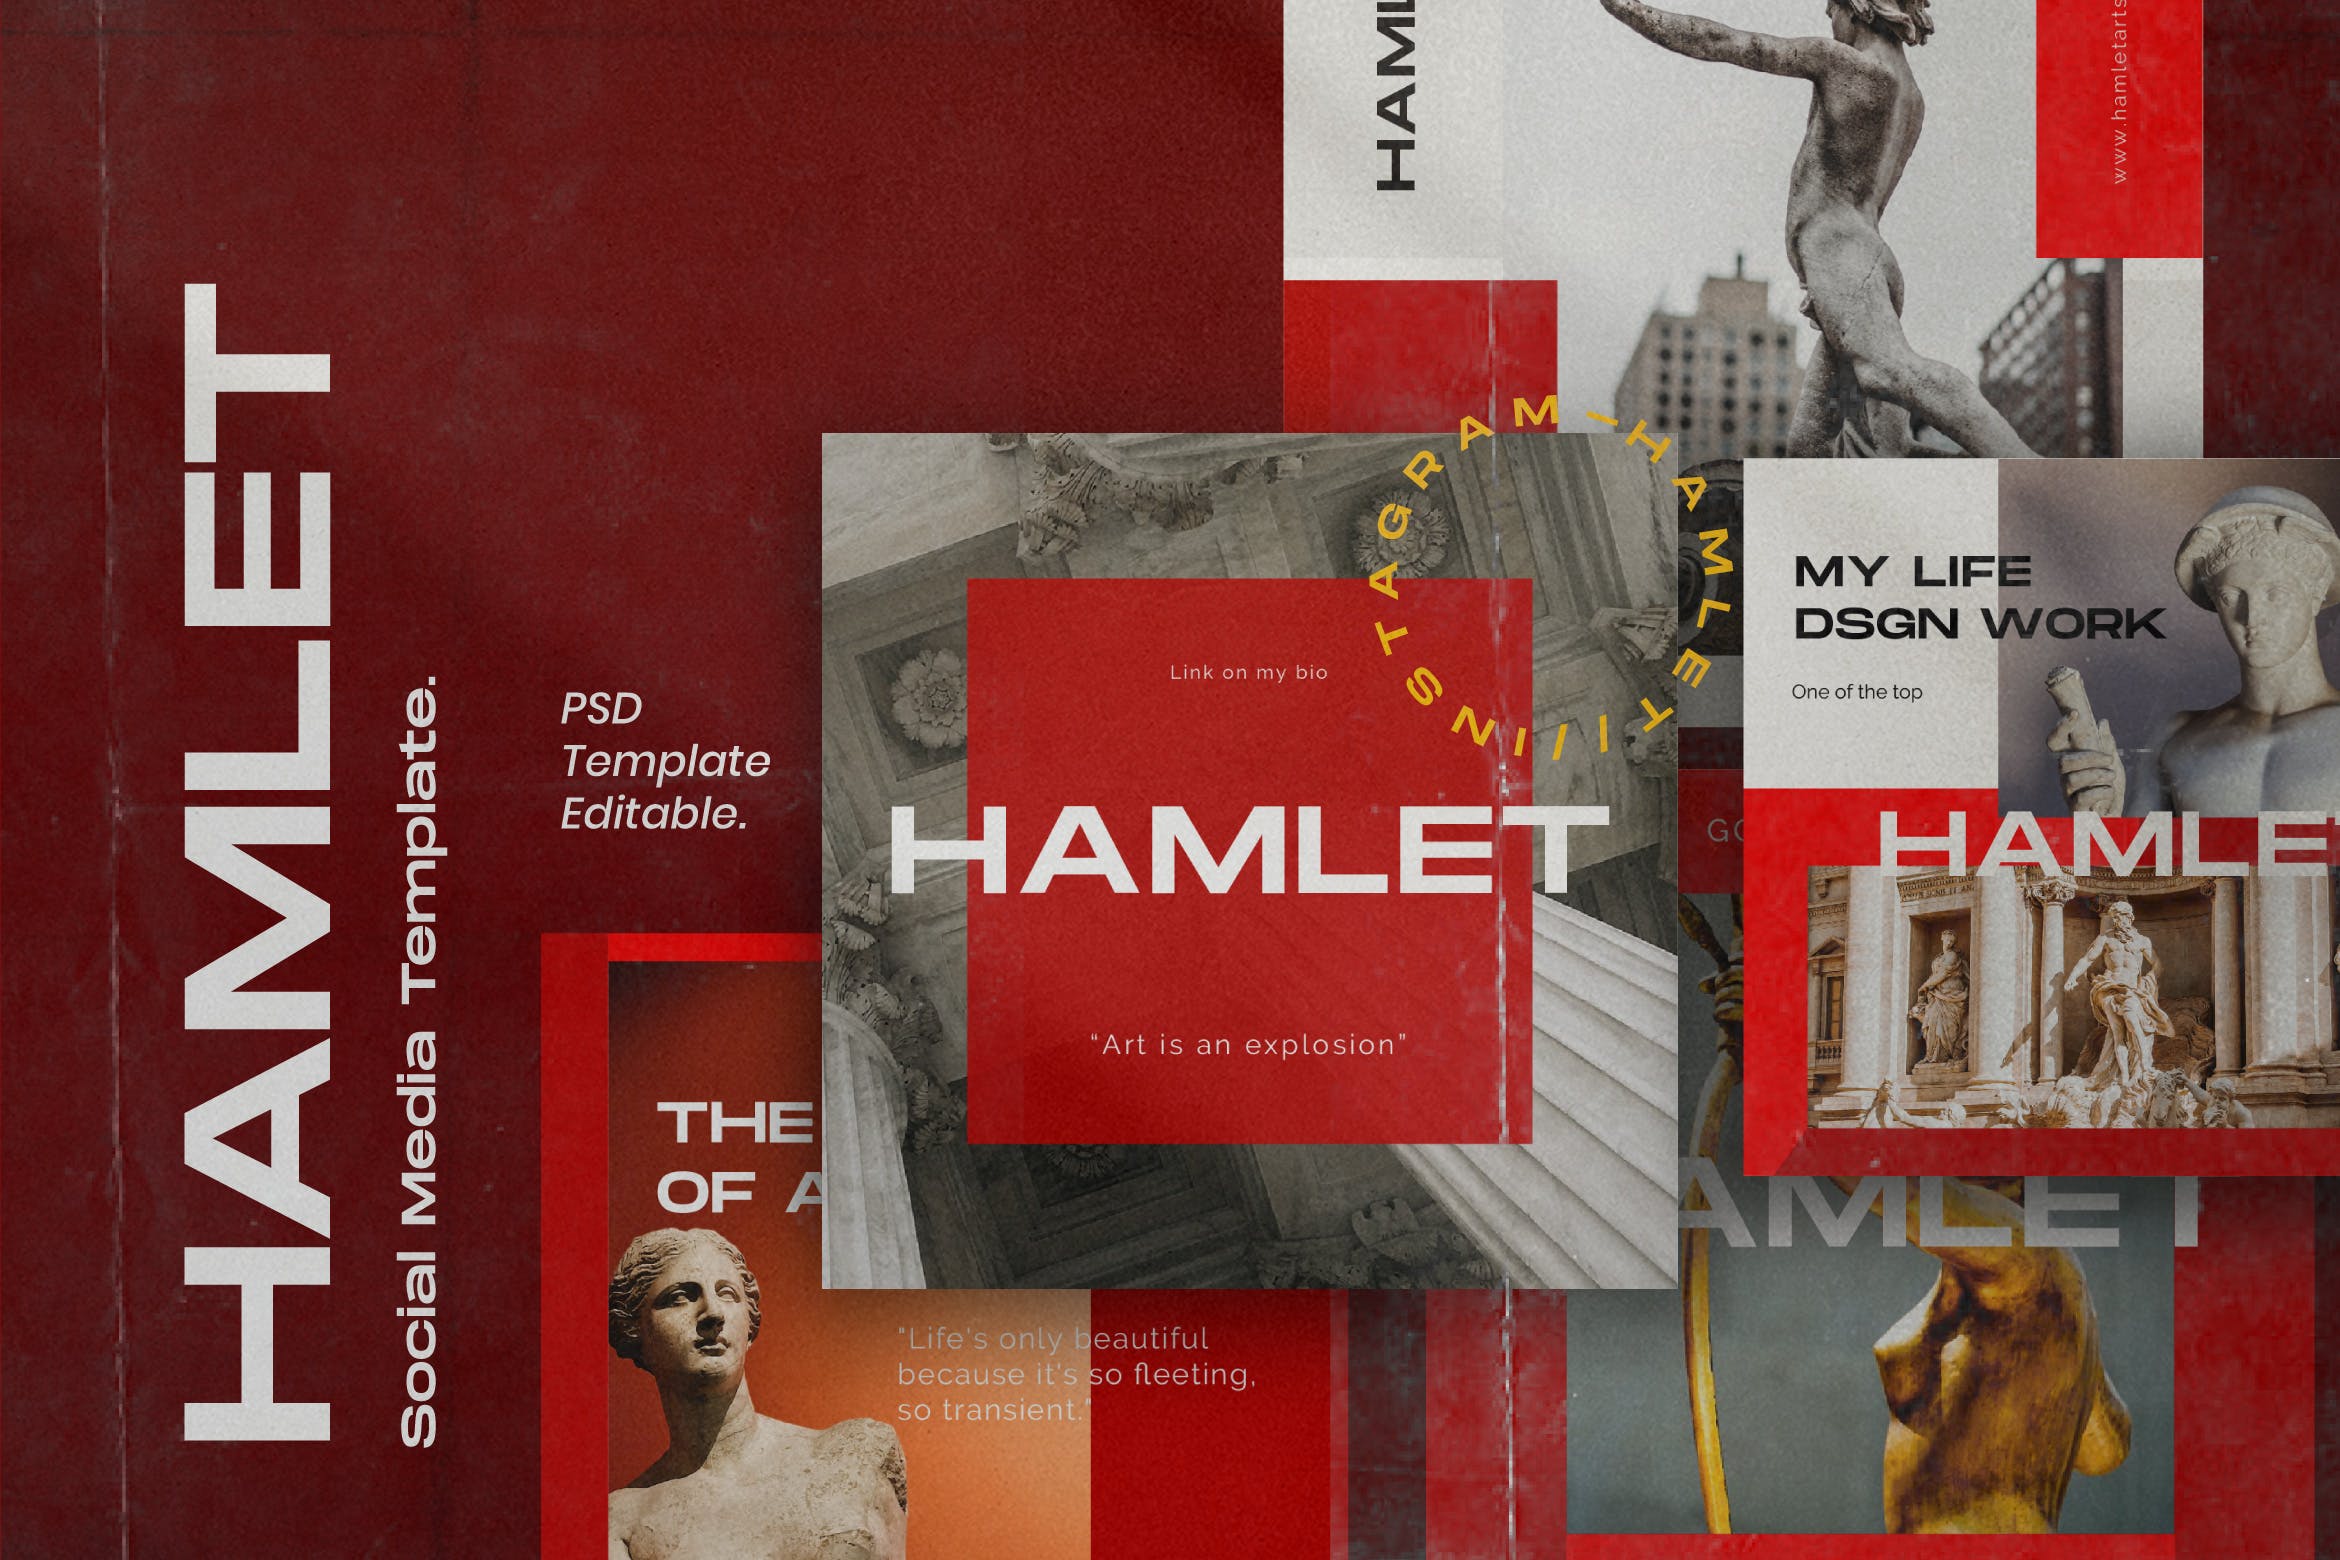 红色设计风格Instagram贴图&品牌故事设计素材包v2 HAMLET PACK 2 – Instagram Template + Stories插图